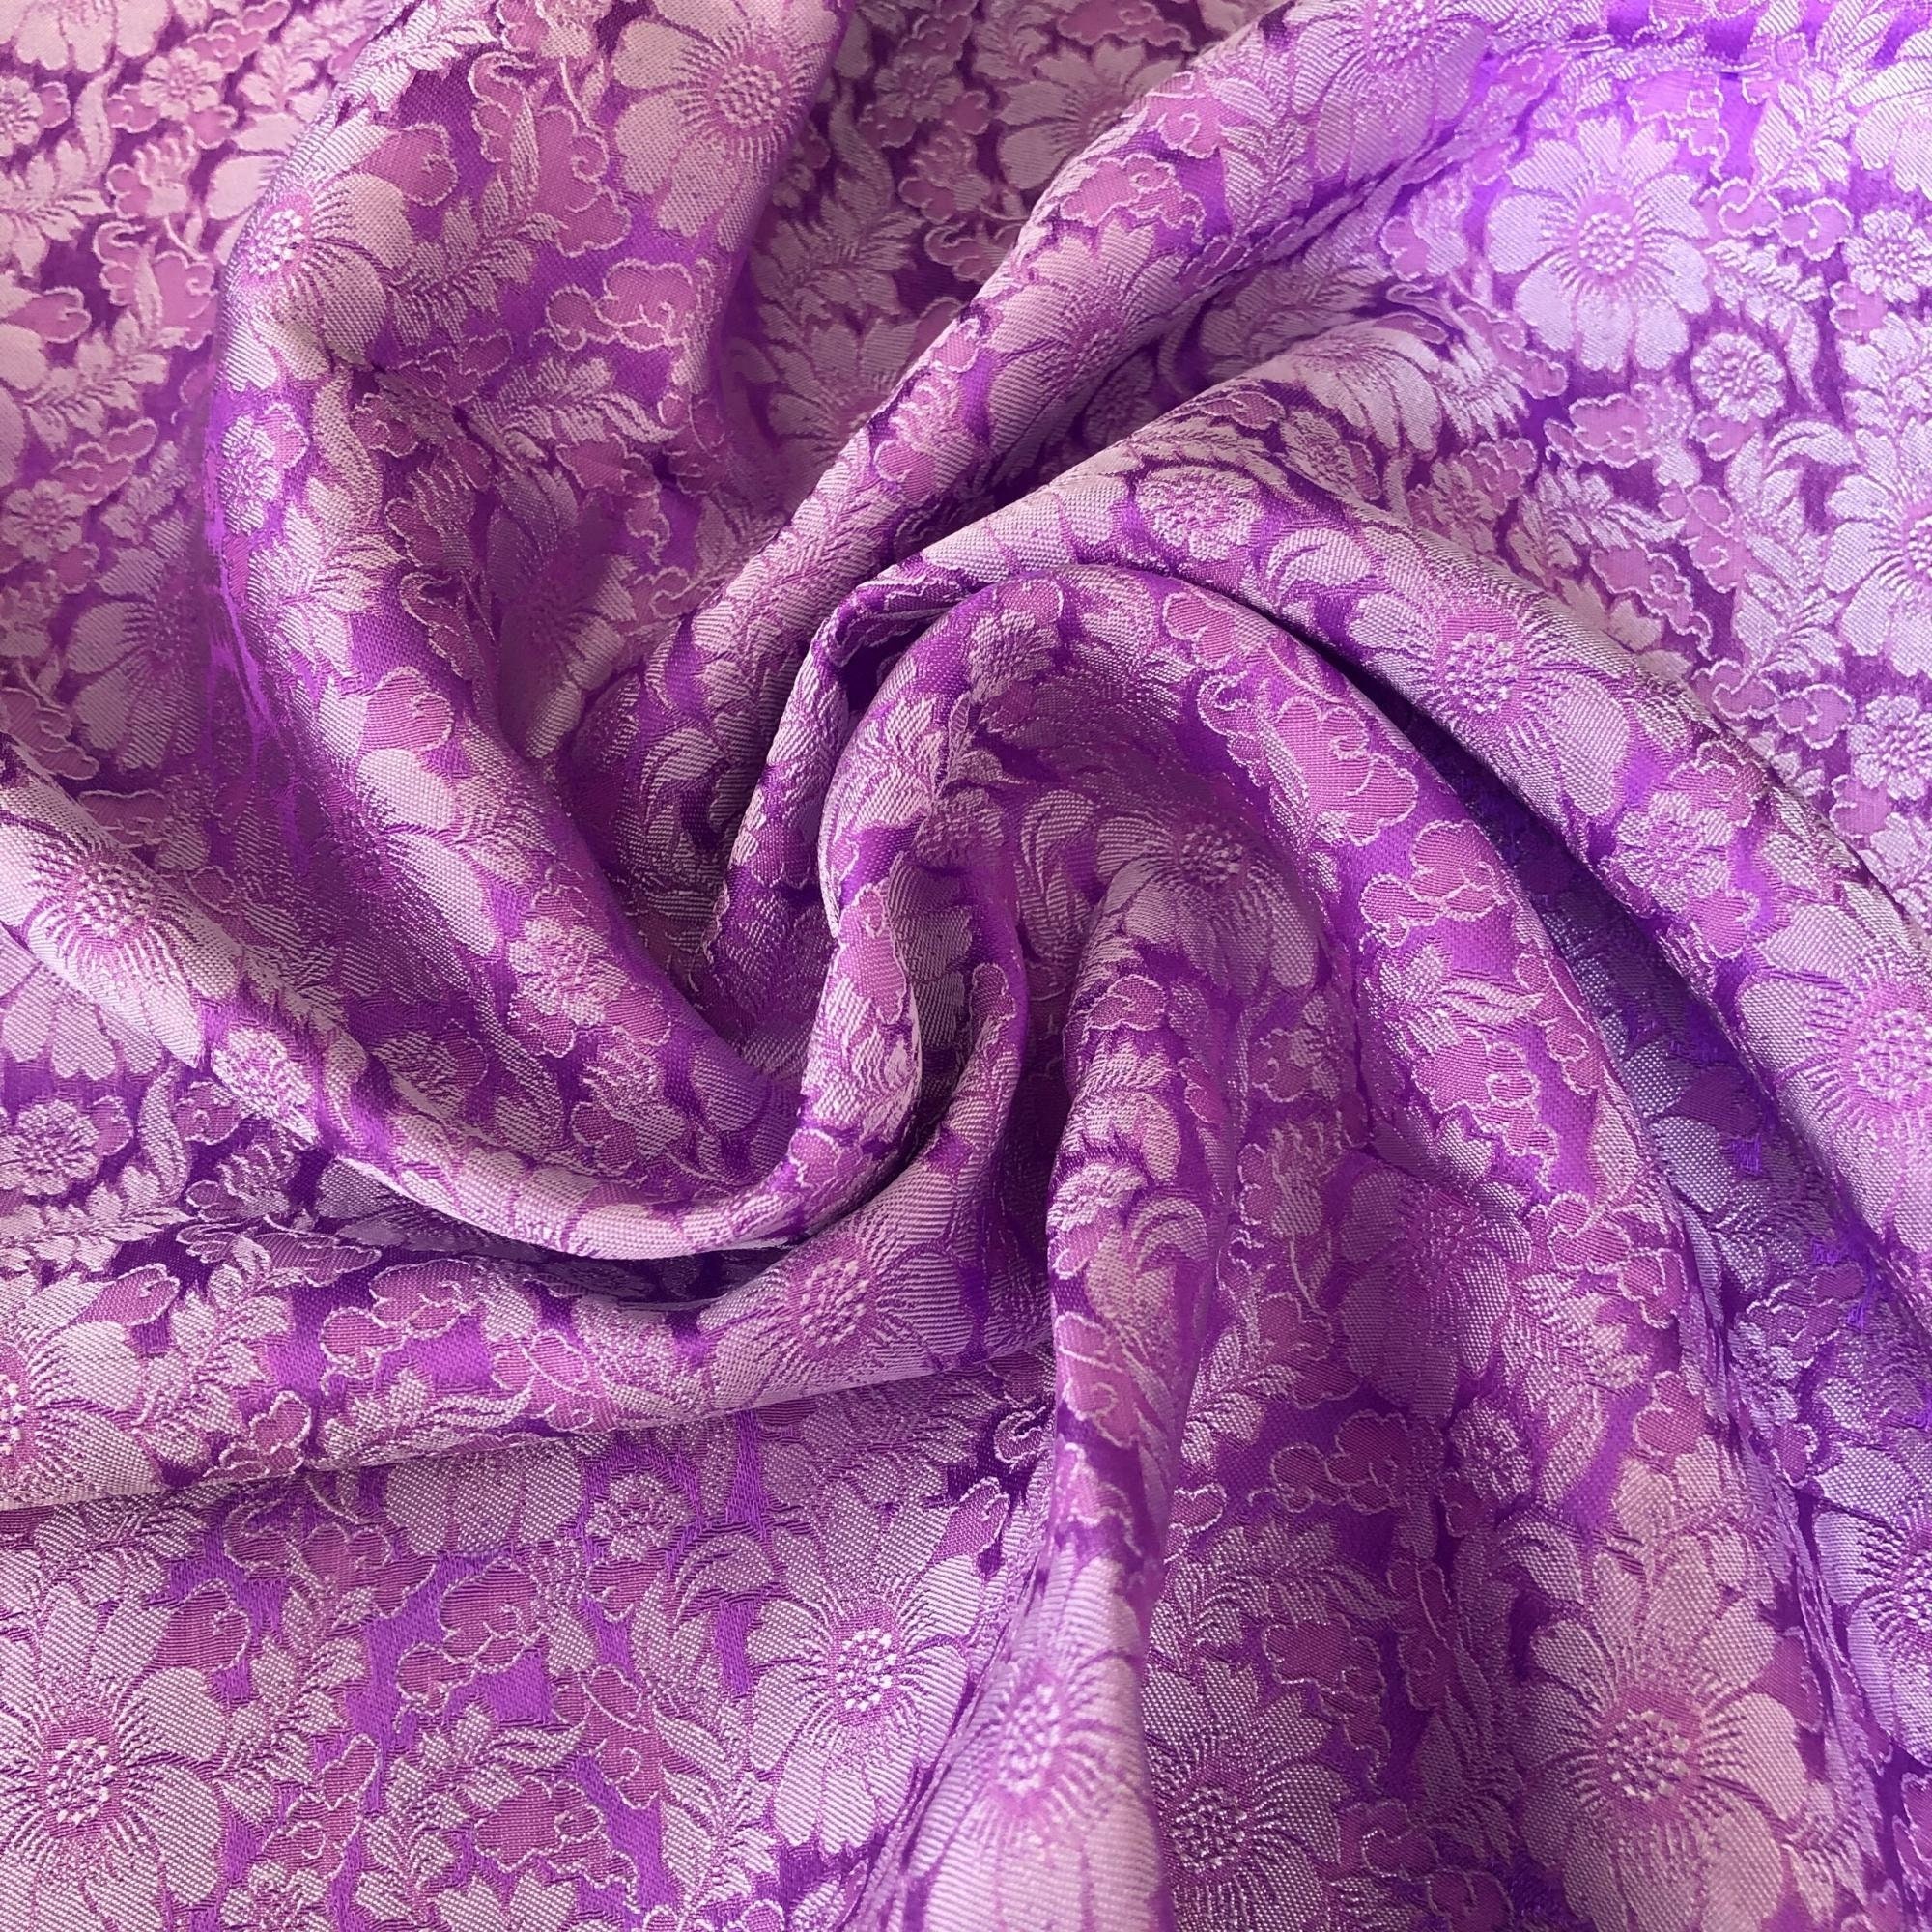 Vải Lụa Tơ Tằm hoa cúc màu tím, mềm#mượt#mịn, dệt thủ công, khổ vải 90cm